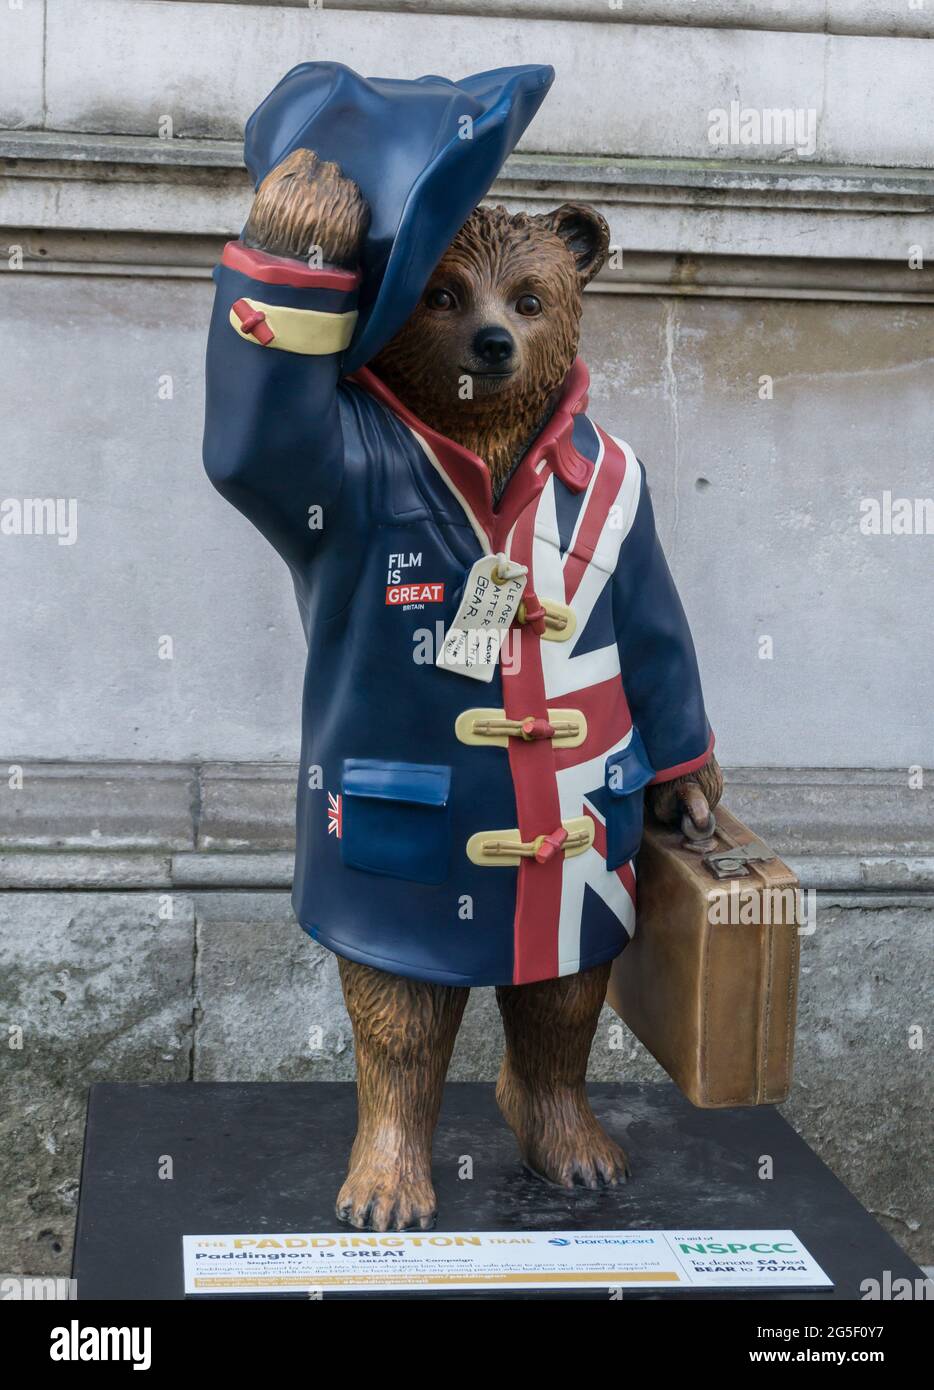 Paddington ist eine großartige Fiberglas-Skulptur des Paddington Bear, die 2014 von Stephen Fry in Downing Street, Whitehall, London, England entworfen wurde Stockfoto